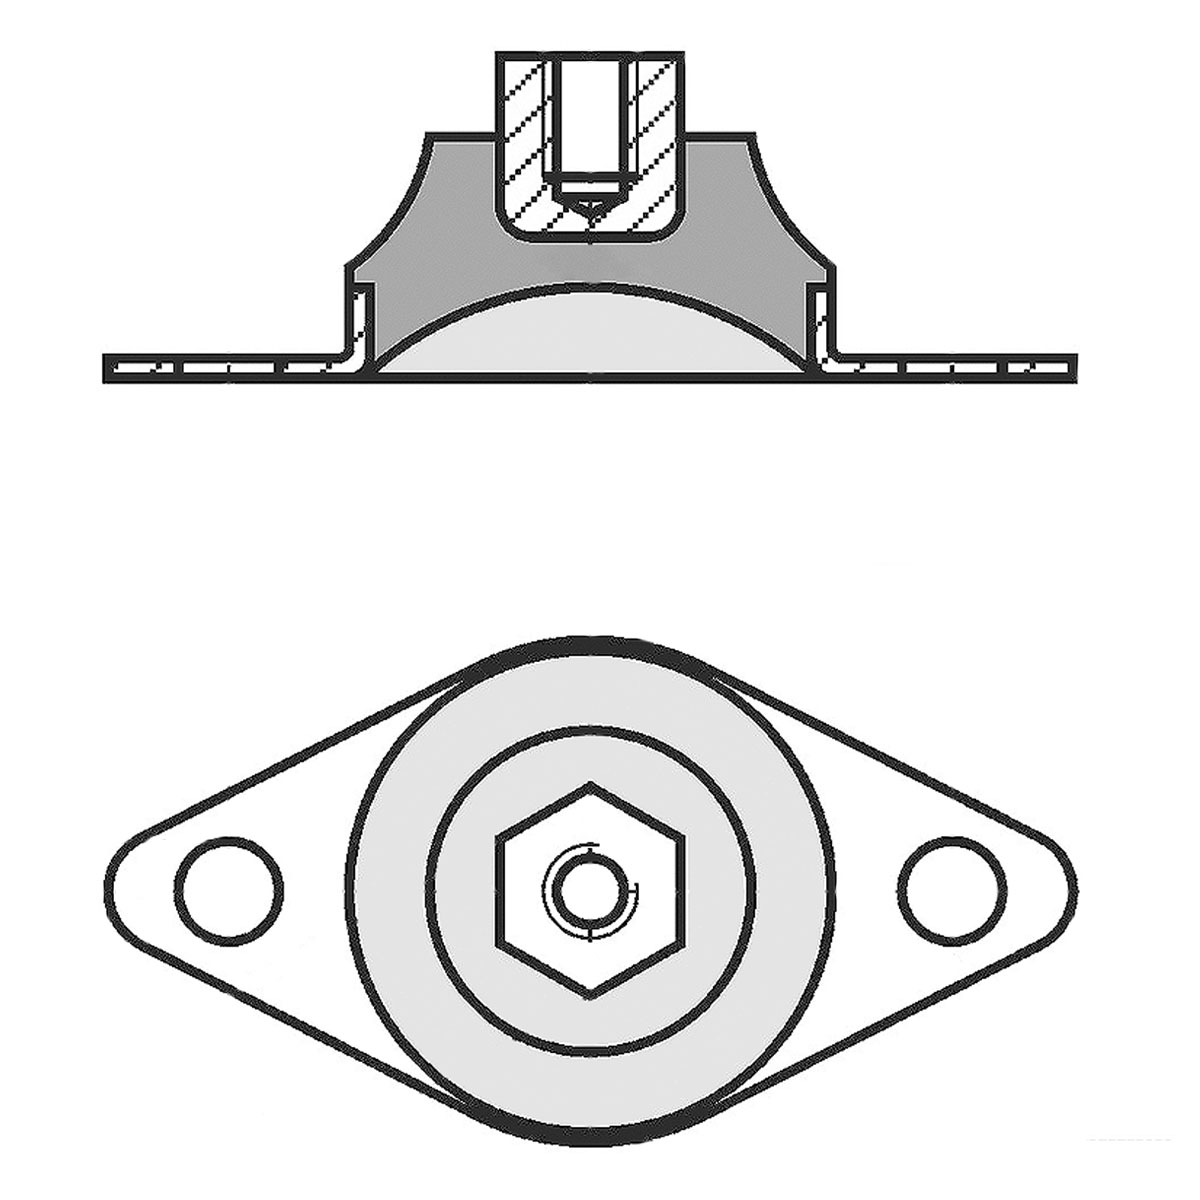 Zeichnung eines Gummi-Metall-Hutelementes mit Bodenplatte, Gewindeeinsatz und dazwischenliegendem Elastomerkorpus auf weißem Hintergrund